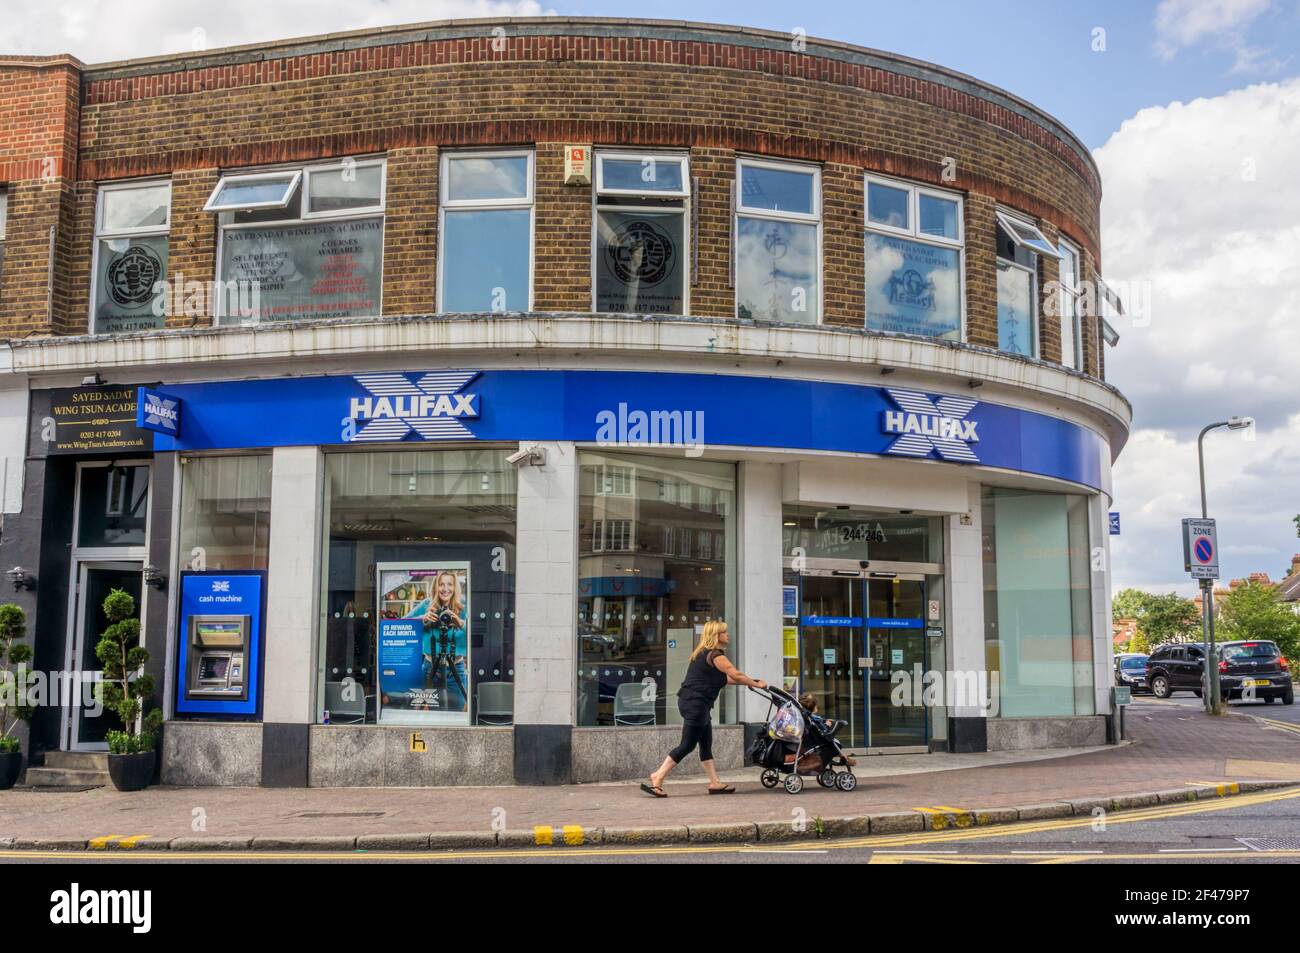 Una filiale della banca Halifax, precedentemente la Halifax Building Society. A Bromley, a sud di Londra. Foto Stock